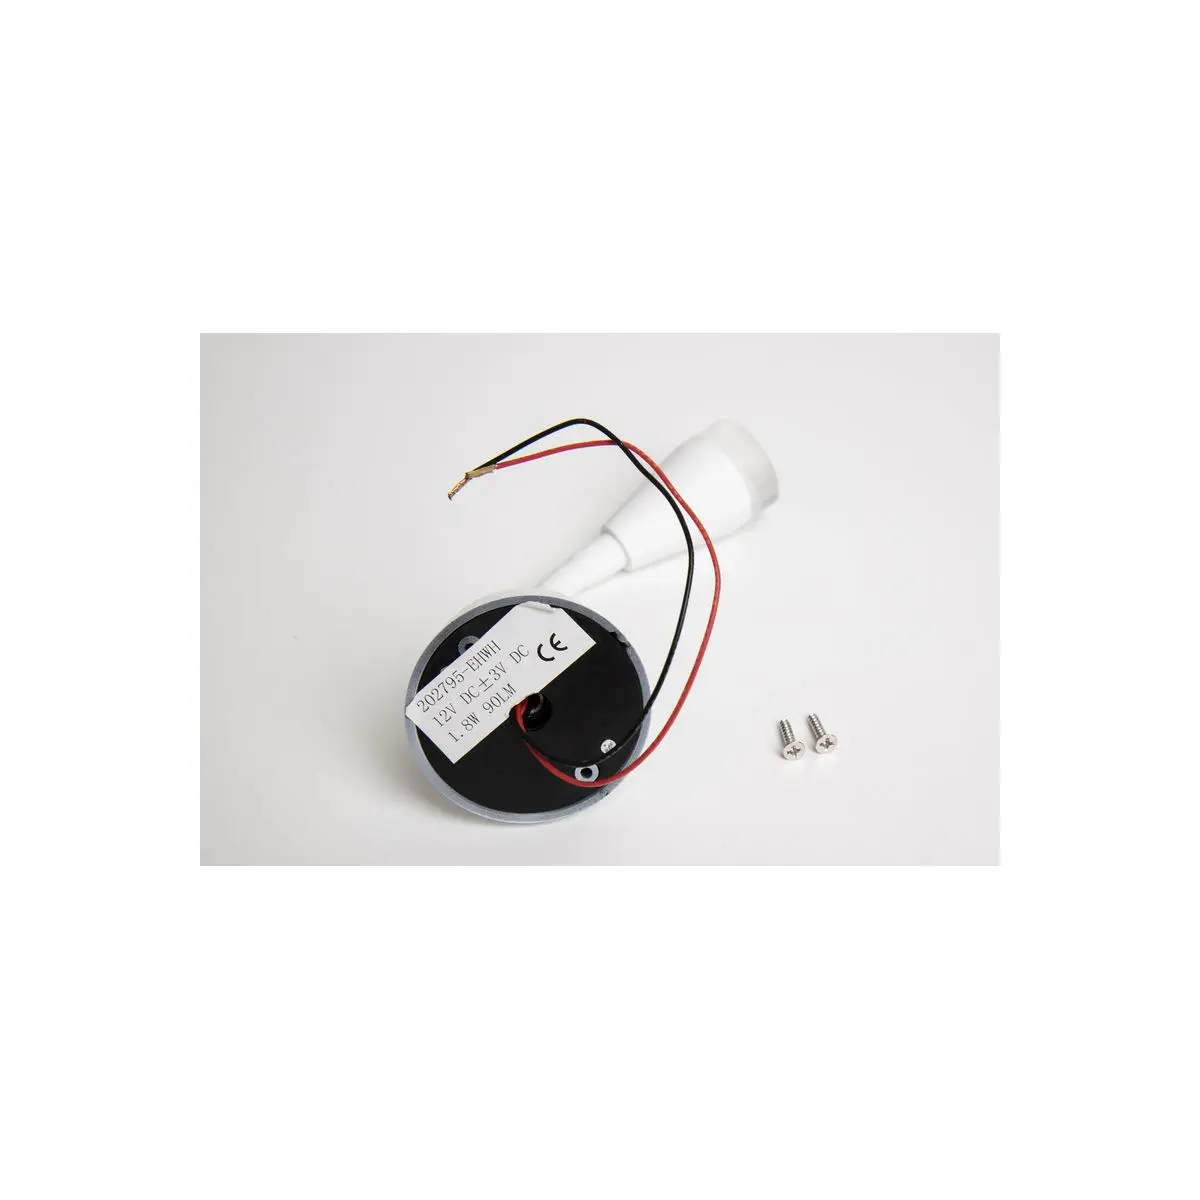 Carbest LED Spot s flexibilným ramenom a USB zásuvkou na nabíjanie